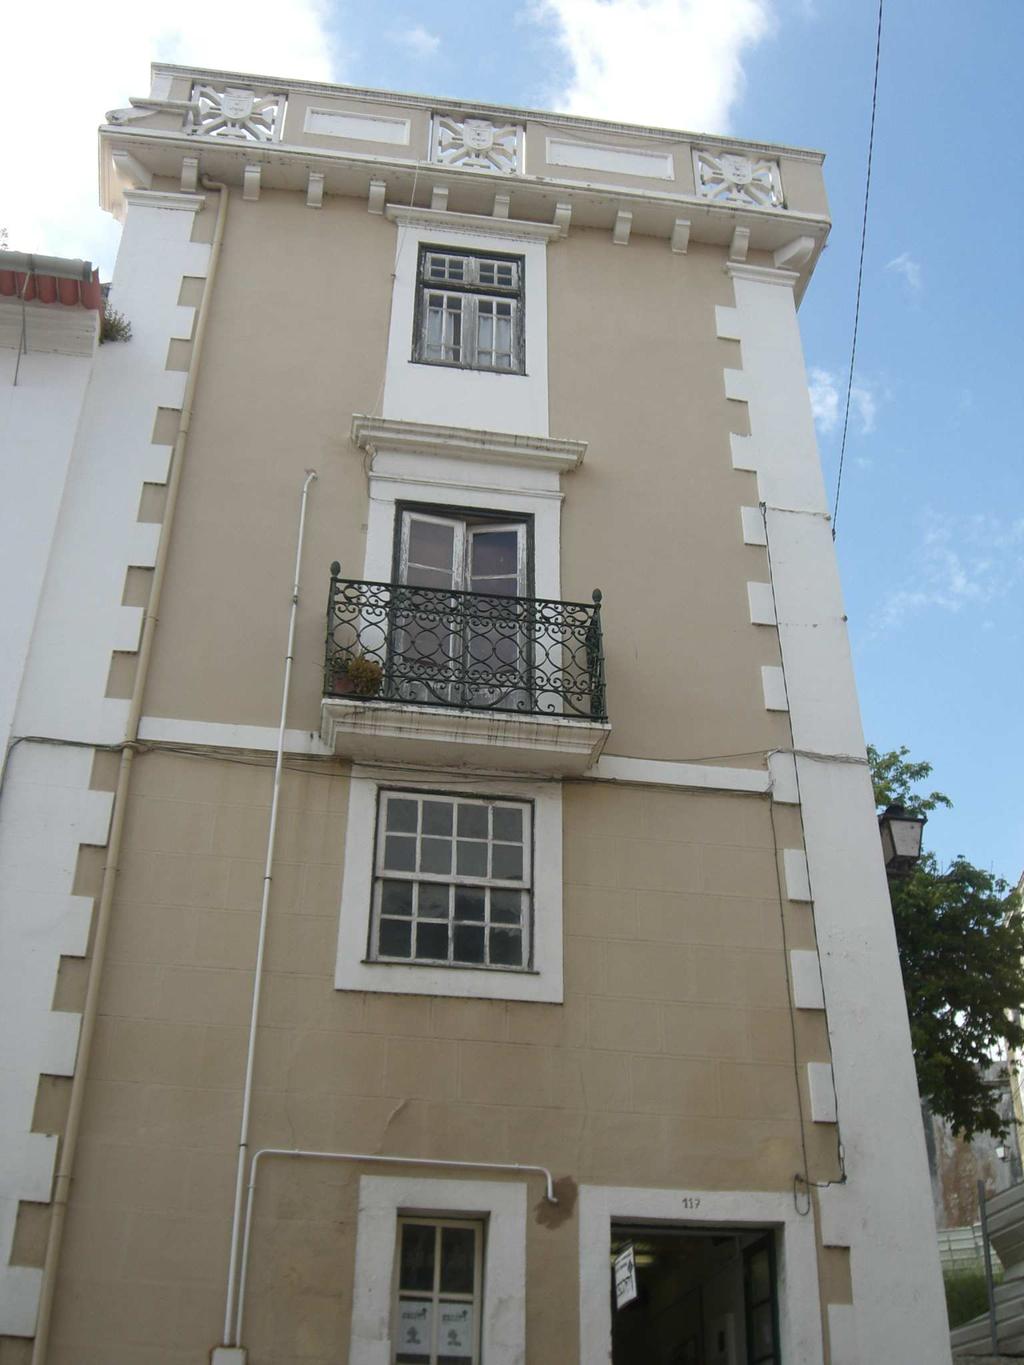 FICHA DE INVENTÁRIO 1.IDENTIFICAÇÃO Designação- Imóvel Local/Endereço- Couraça de Lisboa, nº117 Freguesia- Almedina Concelho- Coimbra Distrito- Coimbra 2.